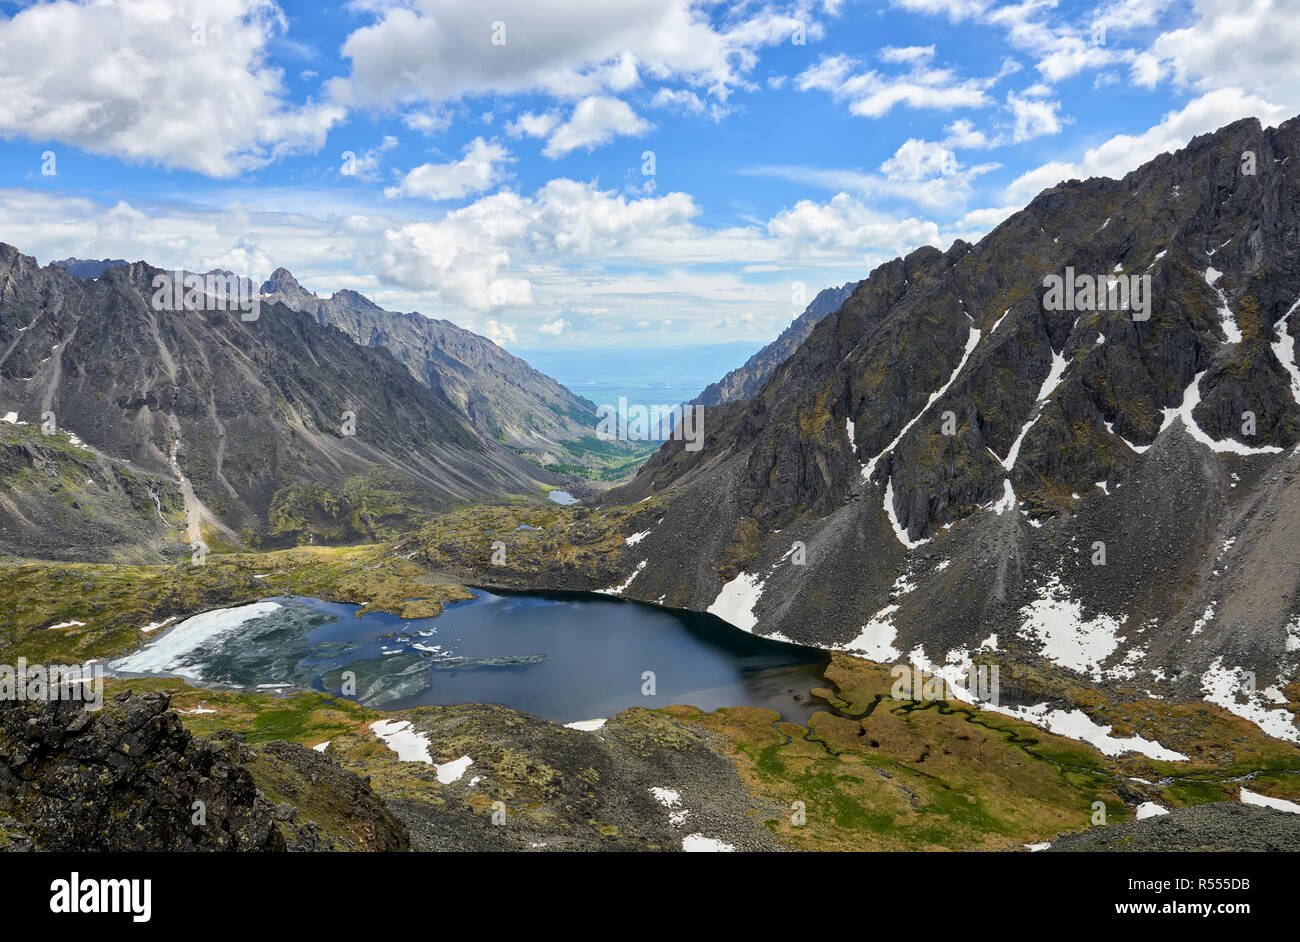 Lago di montagna con ghiaccio galleggiante nella stretta valle racchiusa da montagne. Vista dall'altezza del picco. Eastern Sayan. Asia centrale Foto Stock